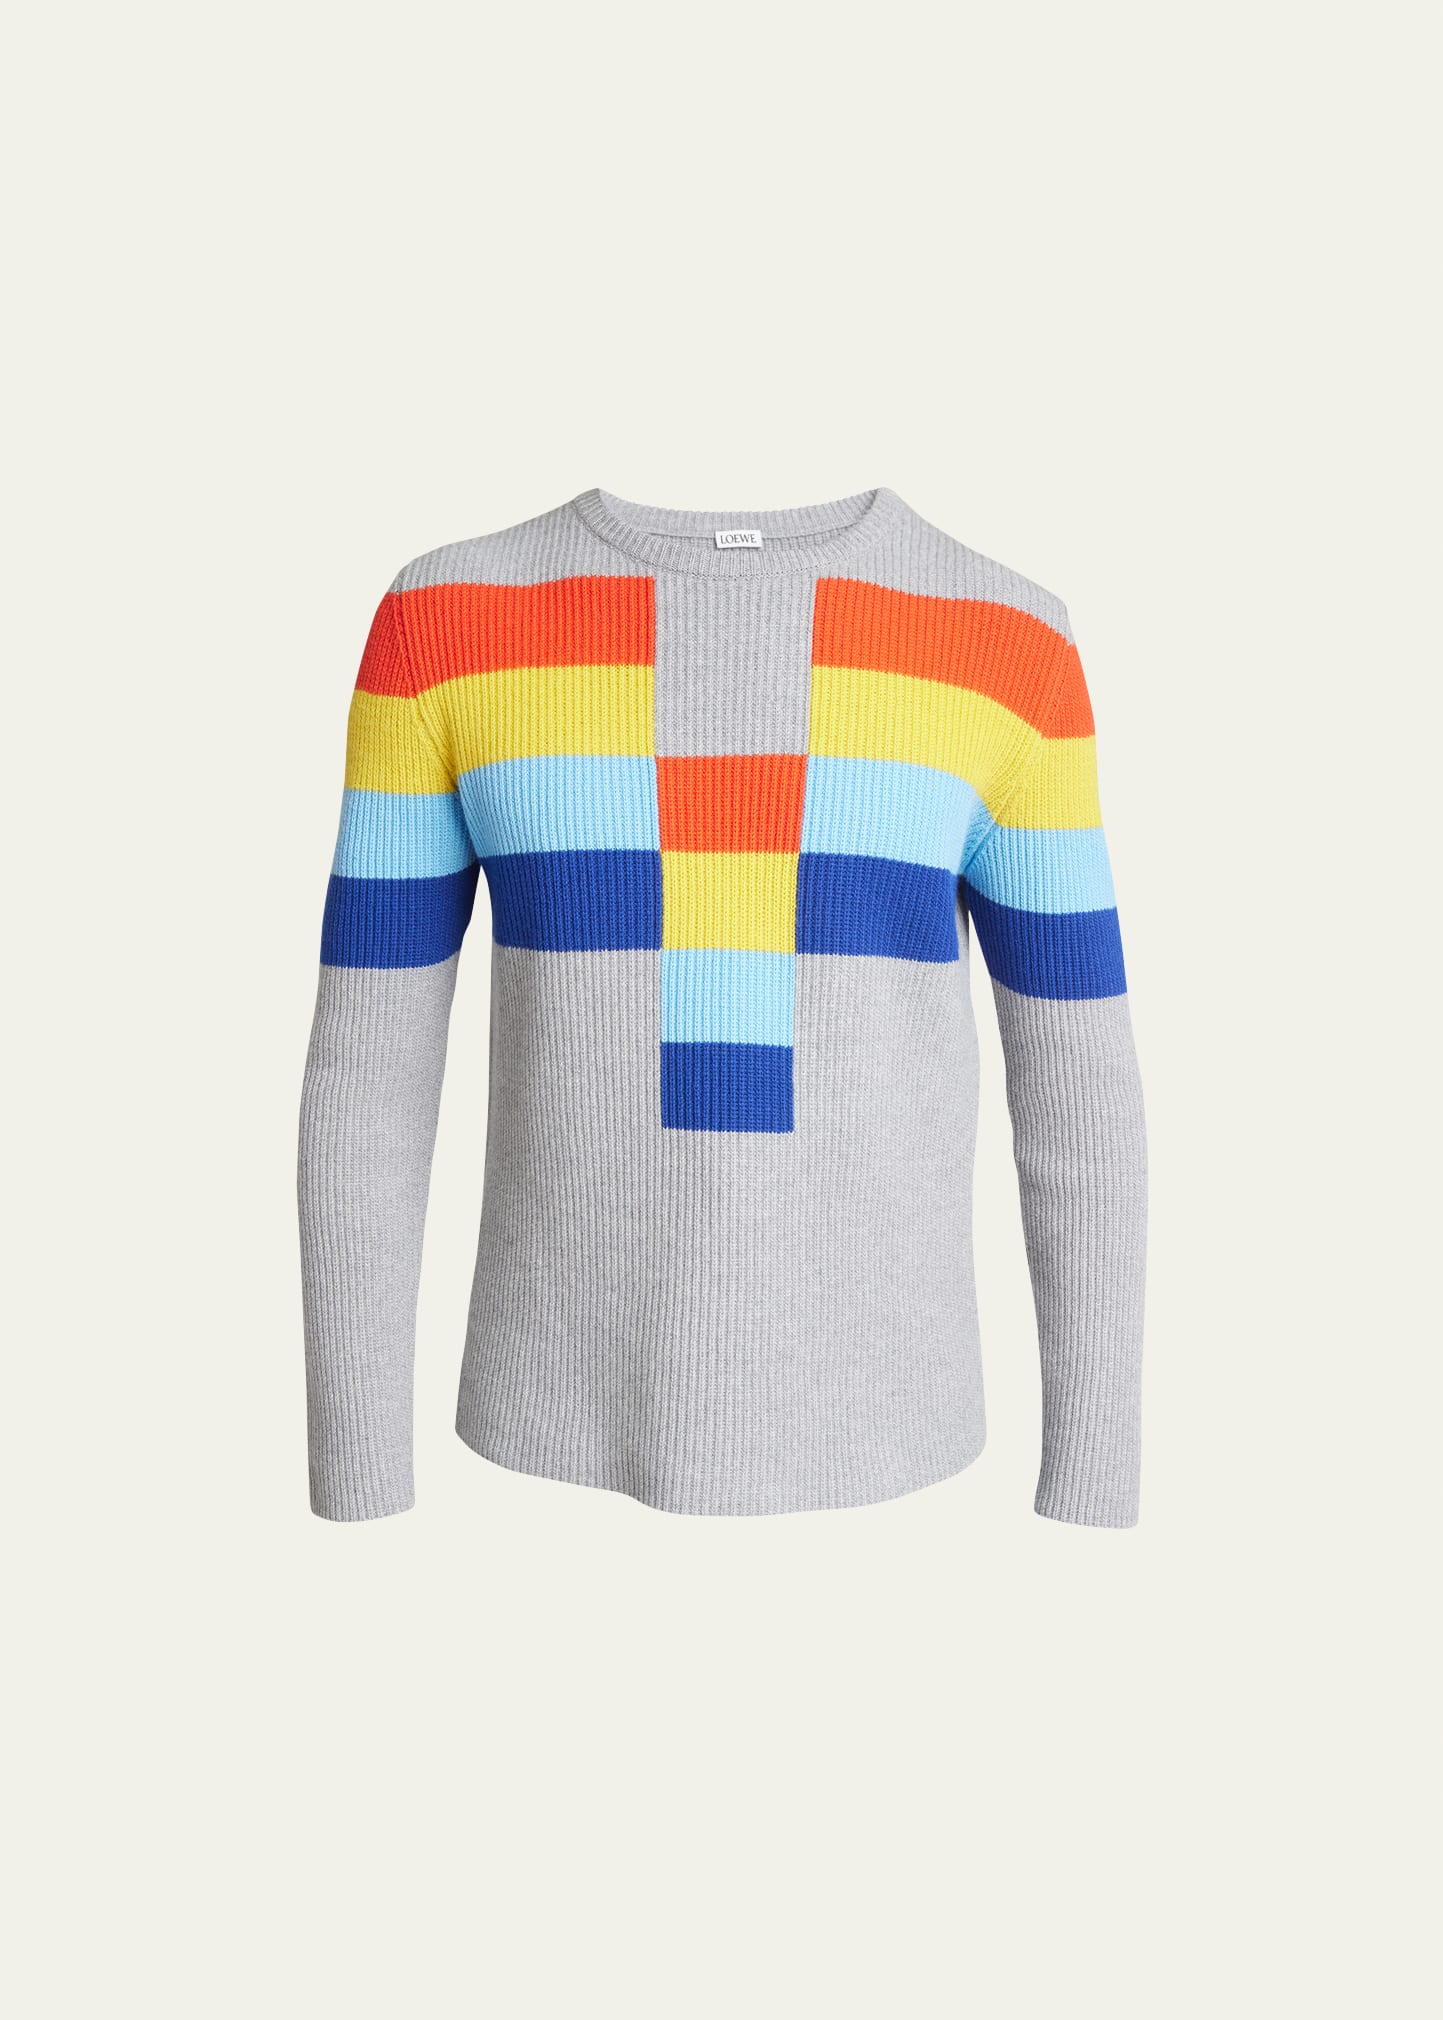 Loewe Men's Geometric Rainbow Striped Sweater In Grey/multi